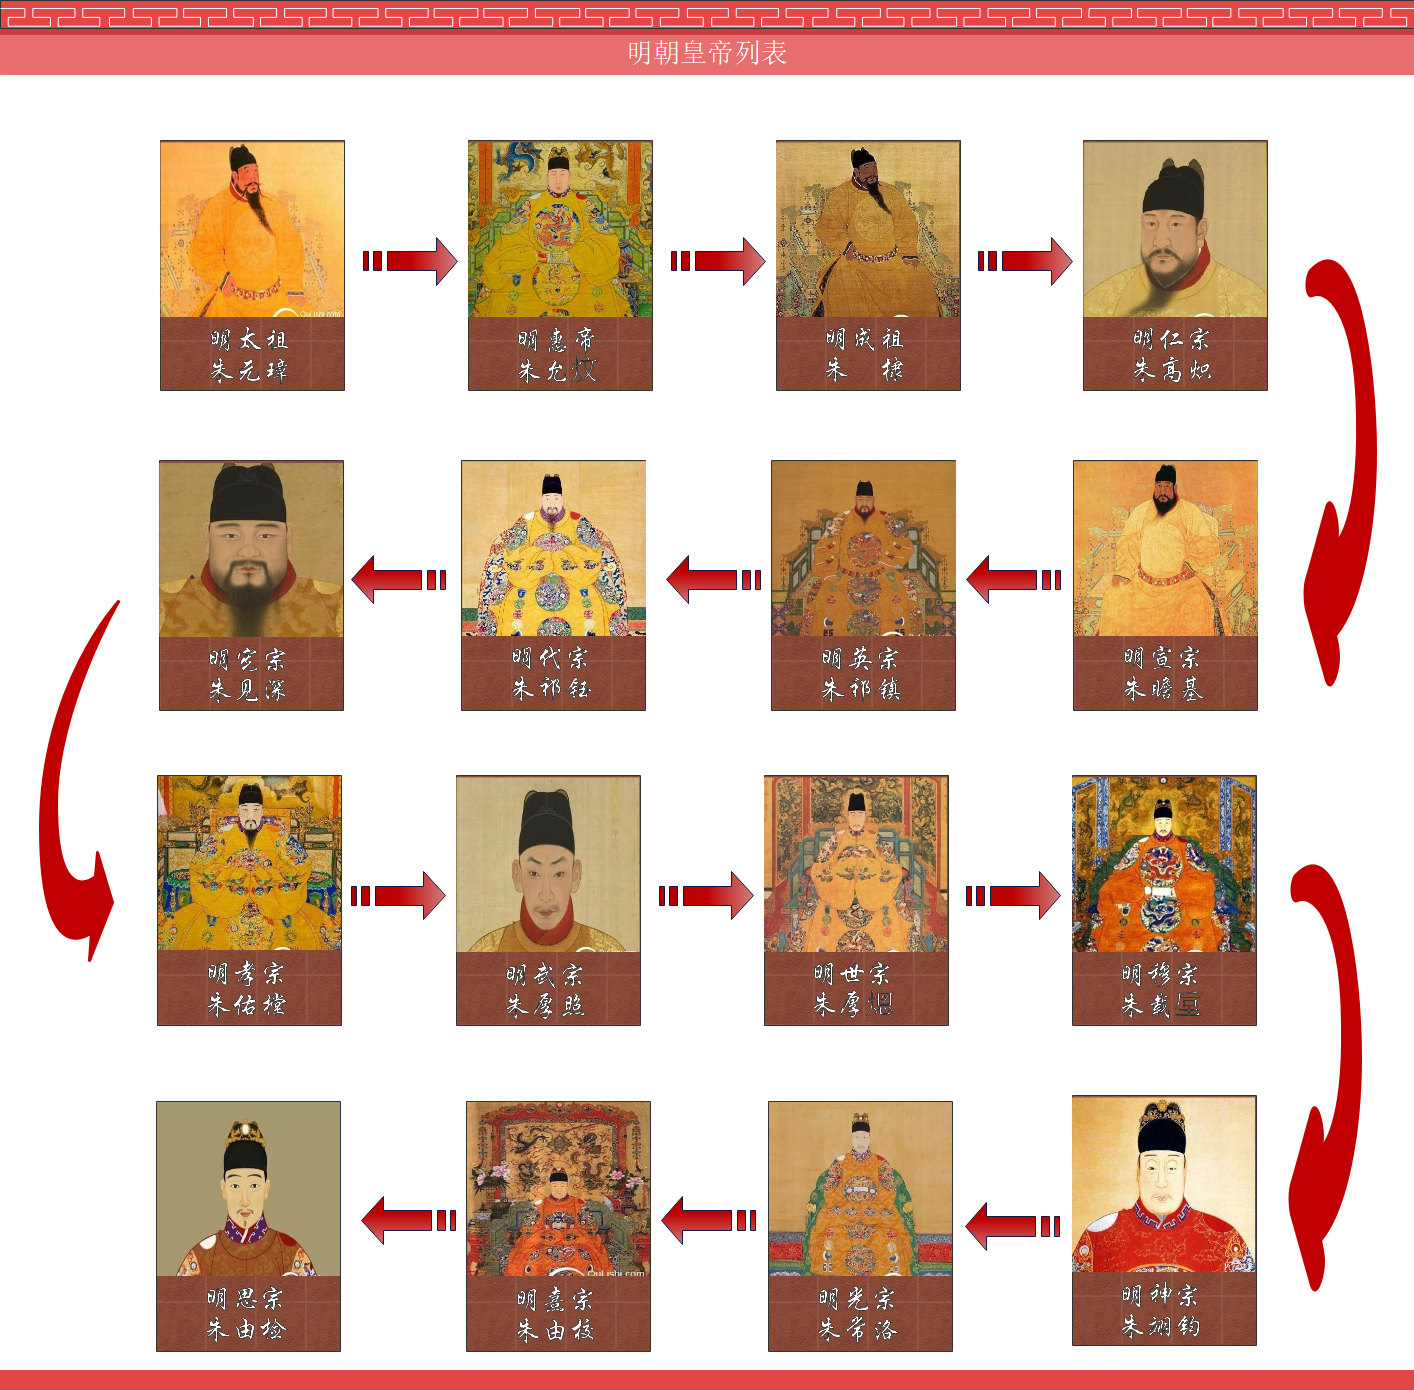 日本天皇年号与汉文化的关系 - 知乎